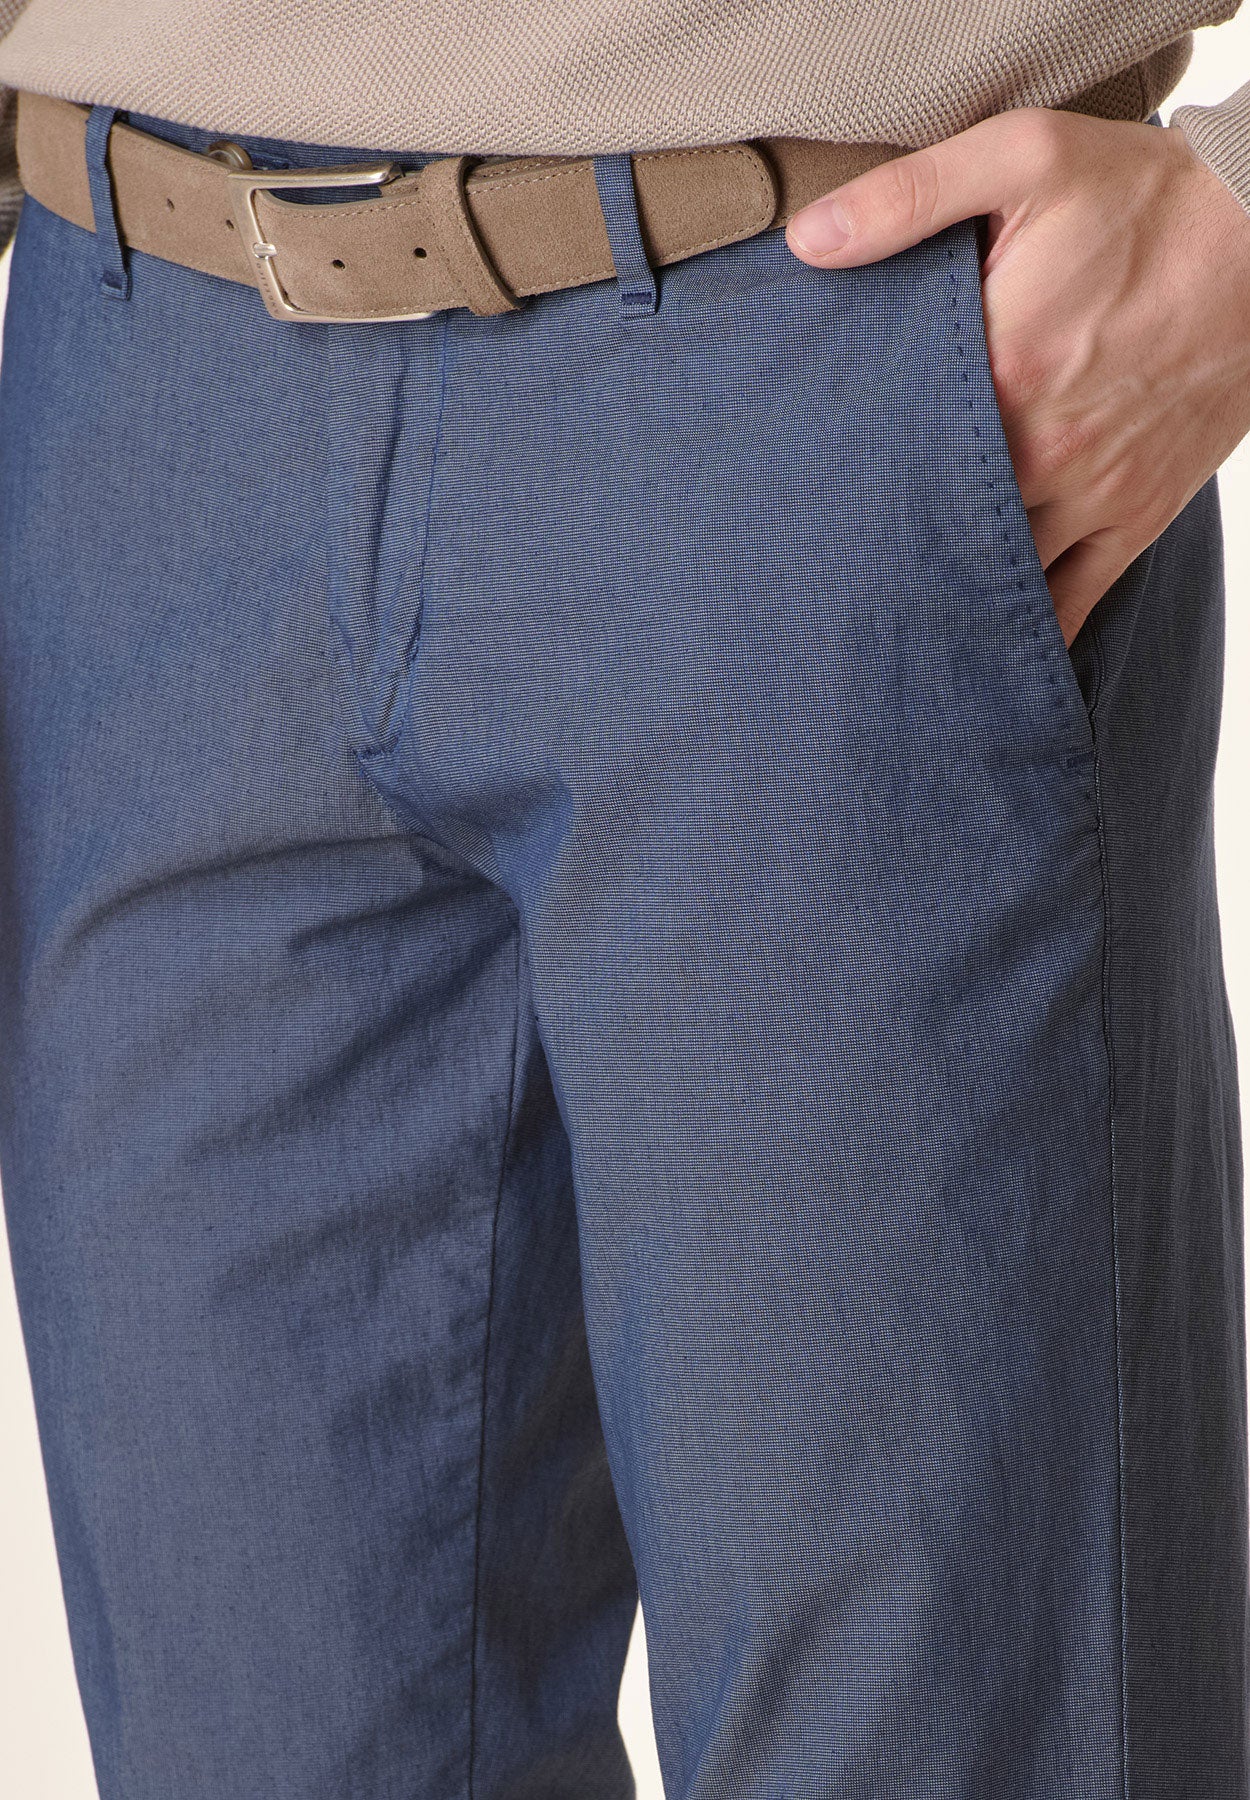 Pantalone blu microarmatura cotone stretch regular fit